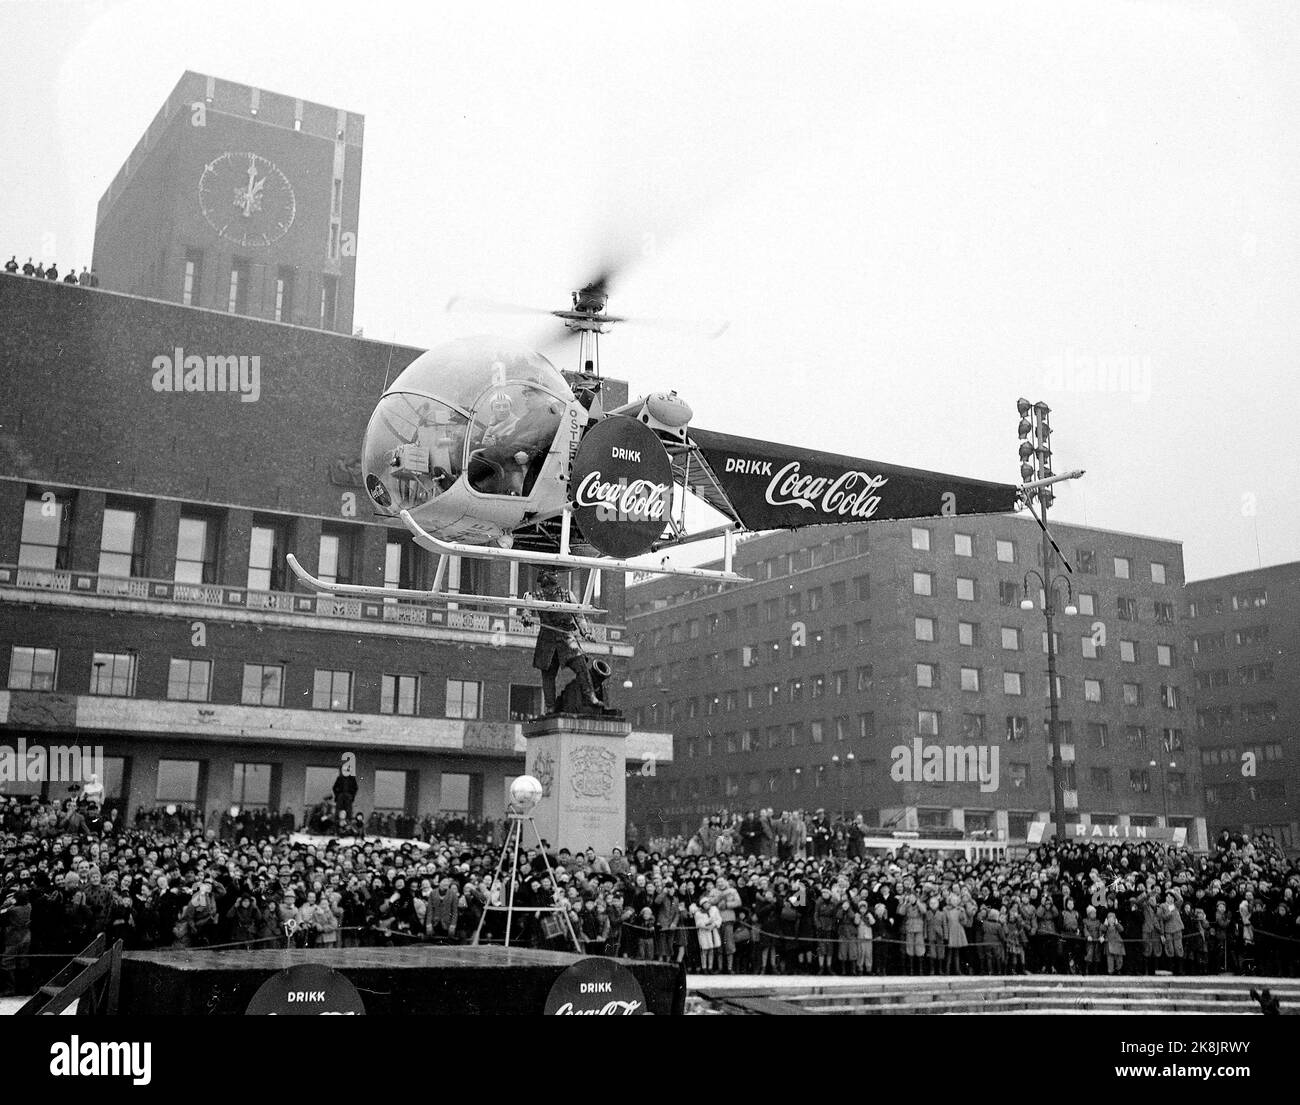 Jeux olympiques d'hiver d'Oslo 1952. Pendant les Jeux Olympiques, Coca Cola a eu une grande campagne publicitaire. Dans la photo, nous voyons un hélicoptère avec la publicité Coca Cola qui atterrit devant la mairie. Banque D'Images